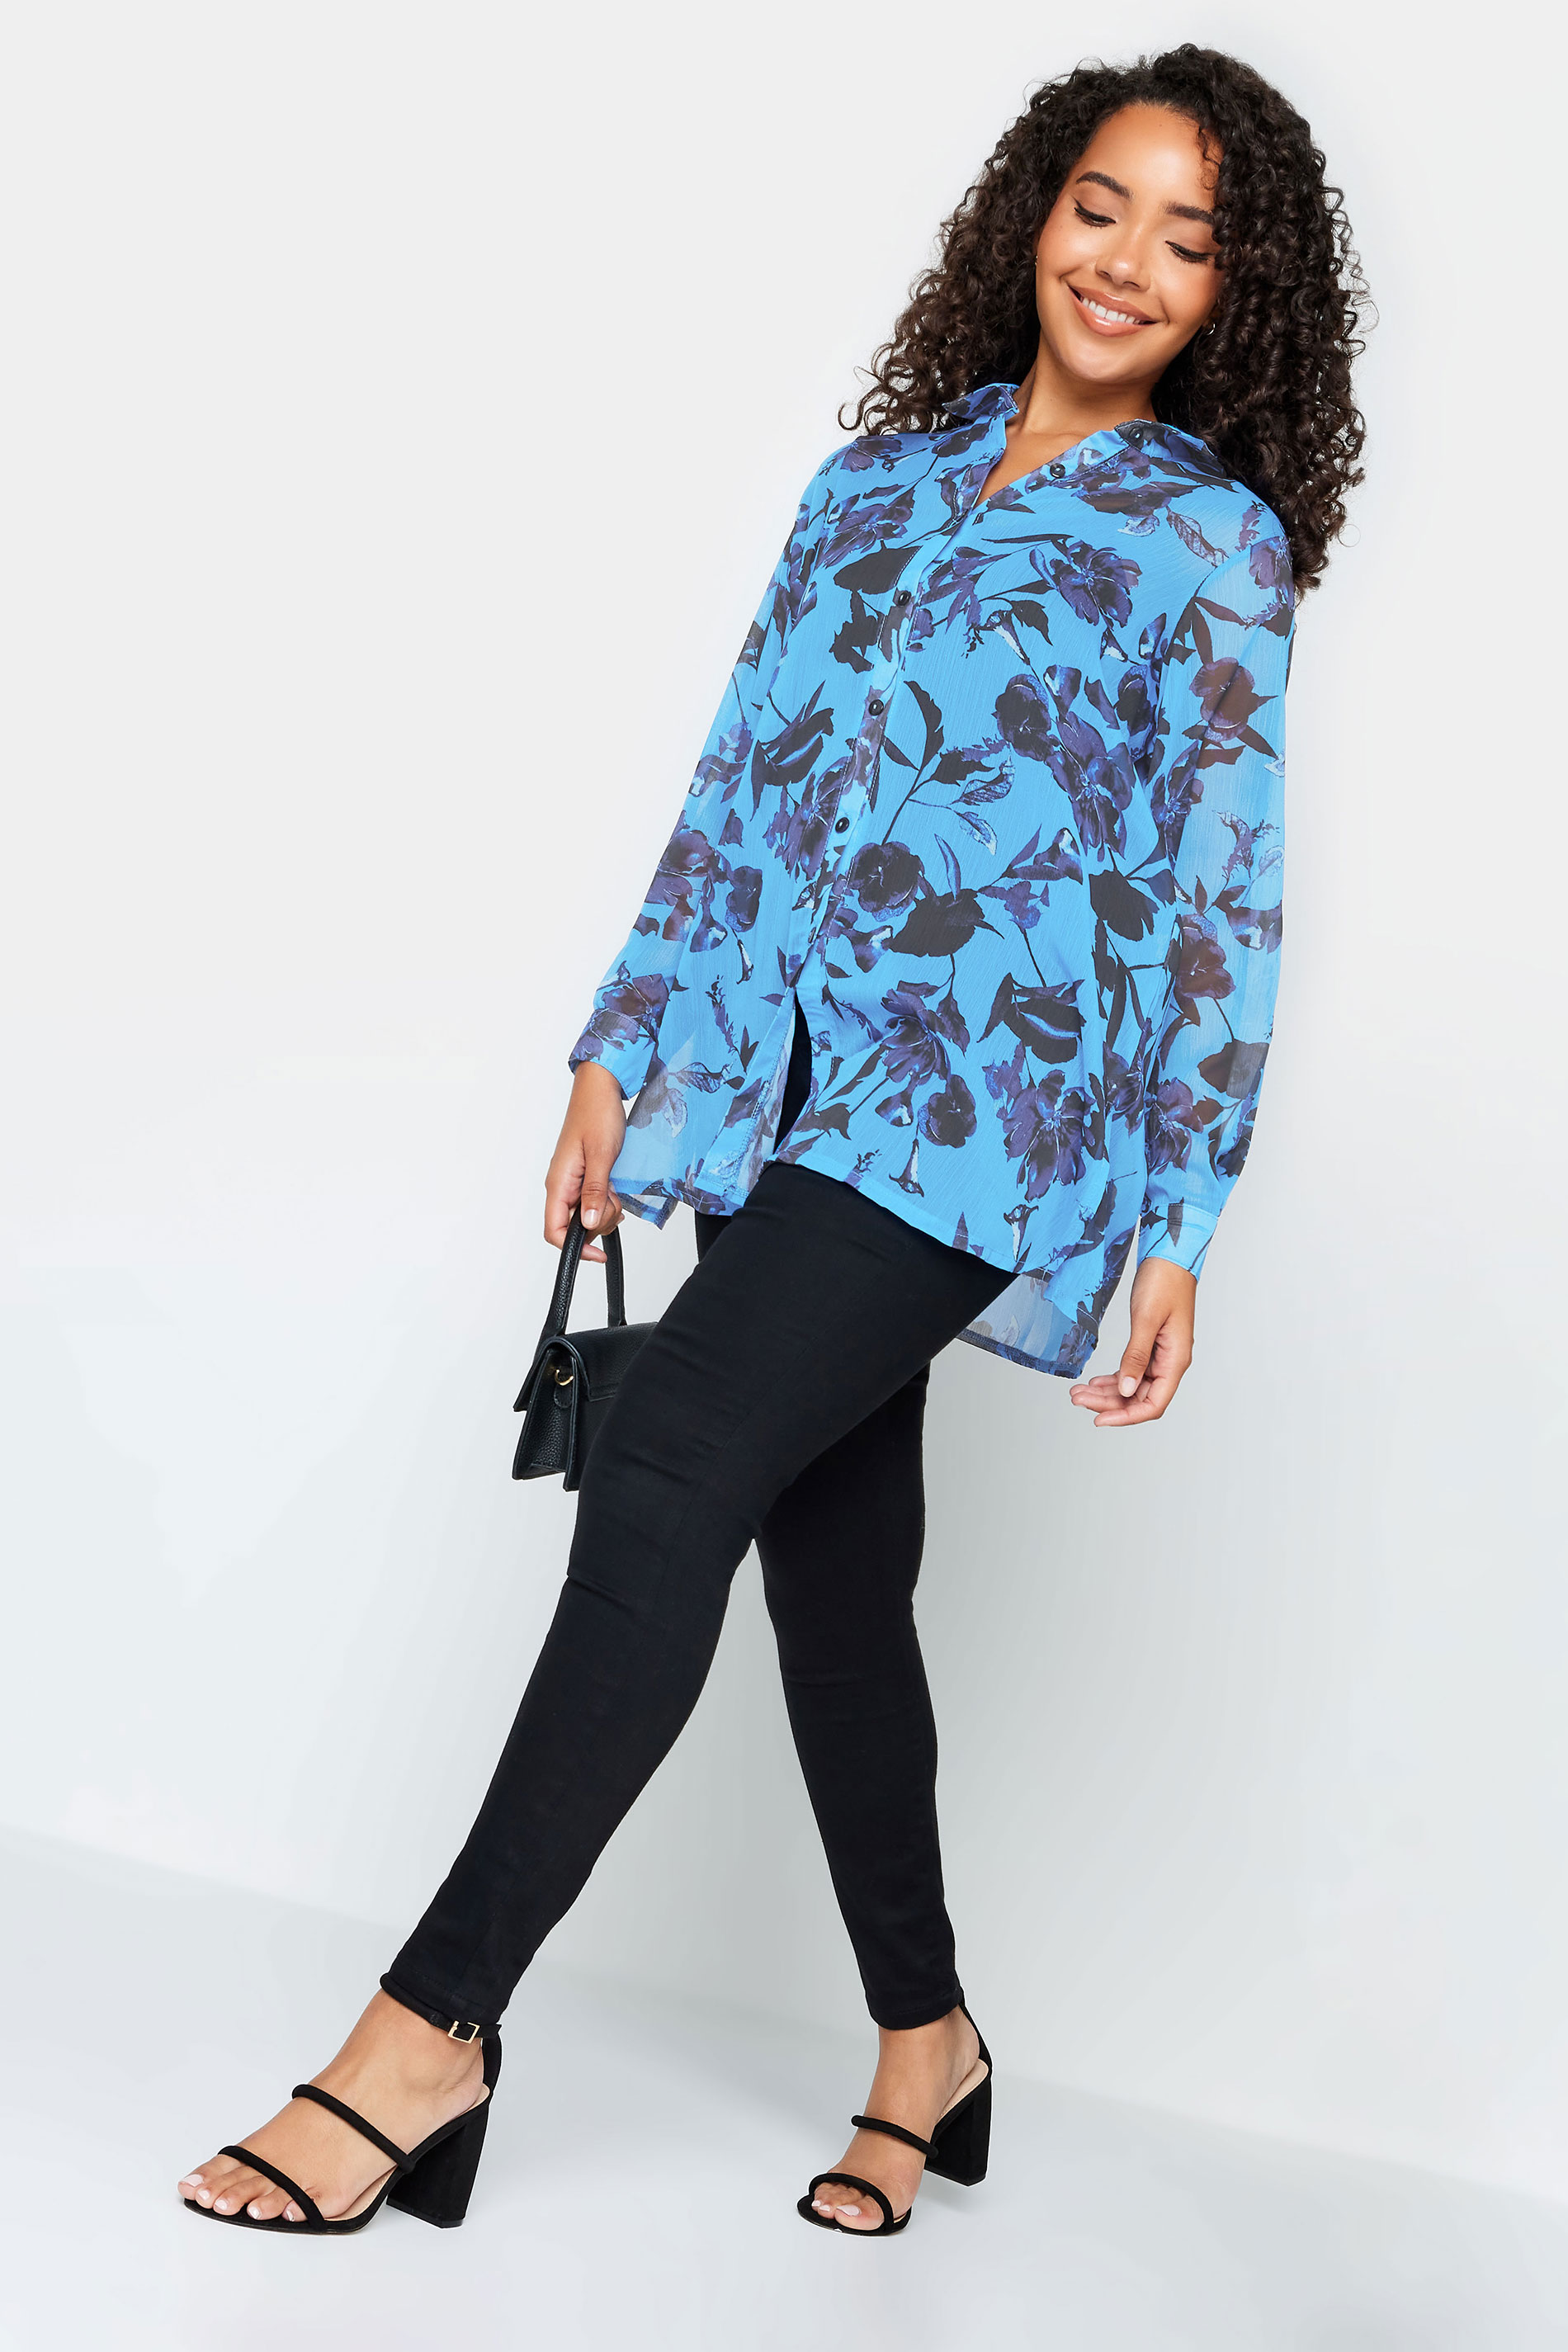 M&Co Blue Floral Print Longline Shirt | M&Co 2